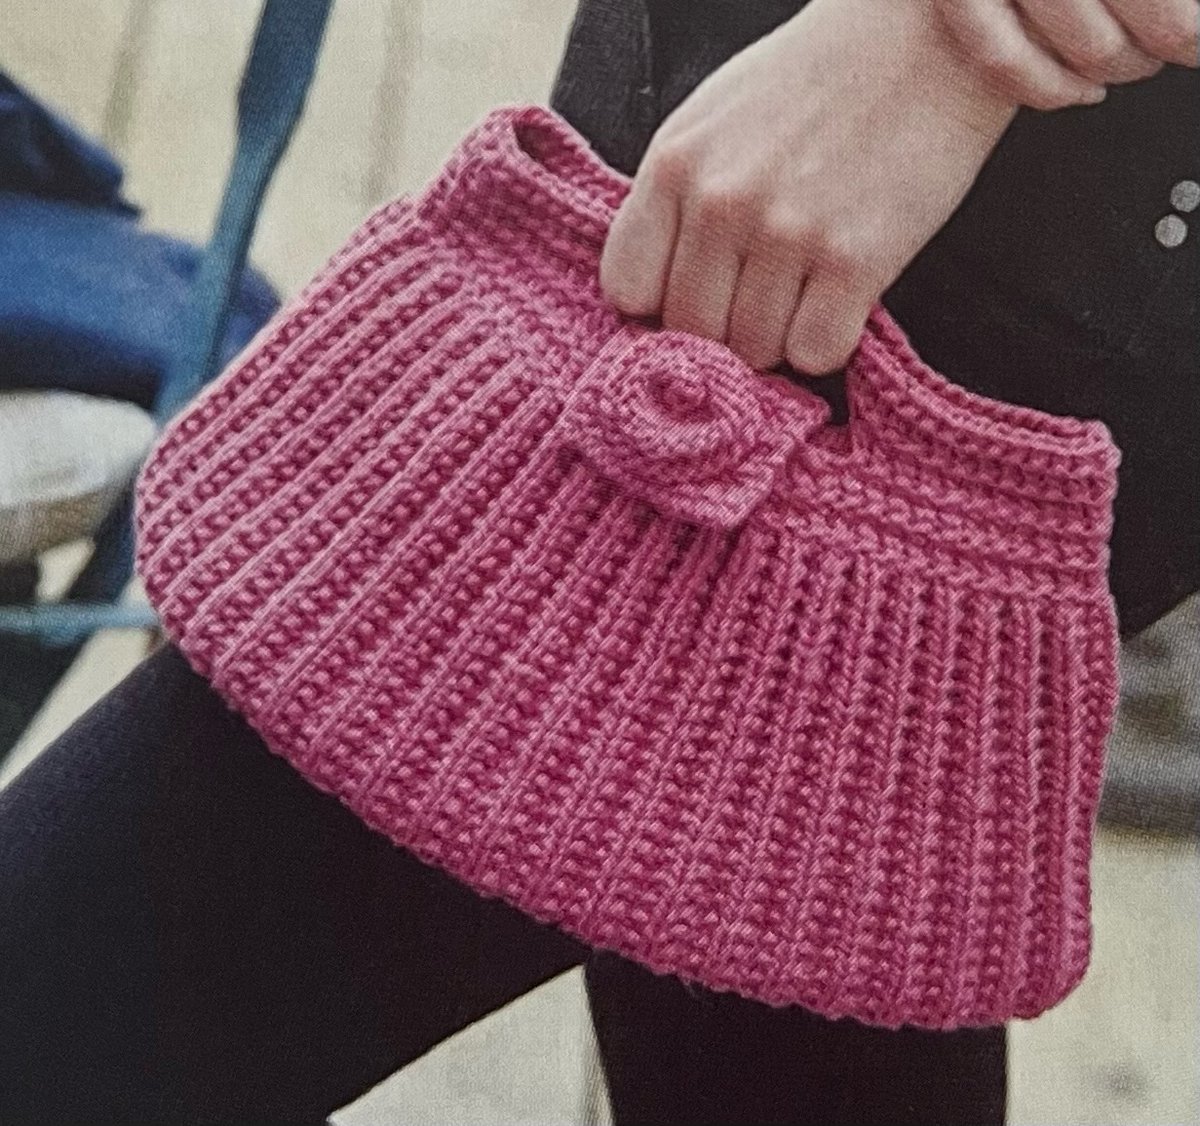 Knitted Pleated Yarn Bag Pattern etsy.me/45PytY8 #knit #knitting #knittingpattern #knittedbag #wip #crafts #MHHSBD #craftbizparty #yarn  #inbiz #handmadehour